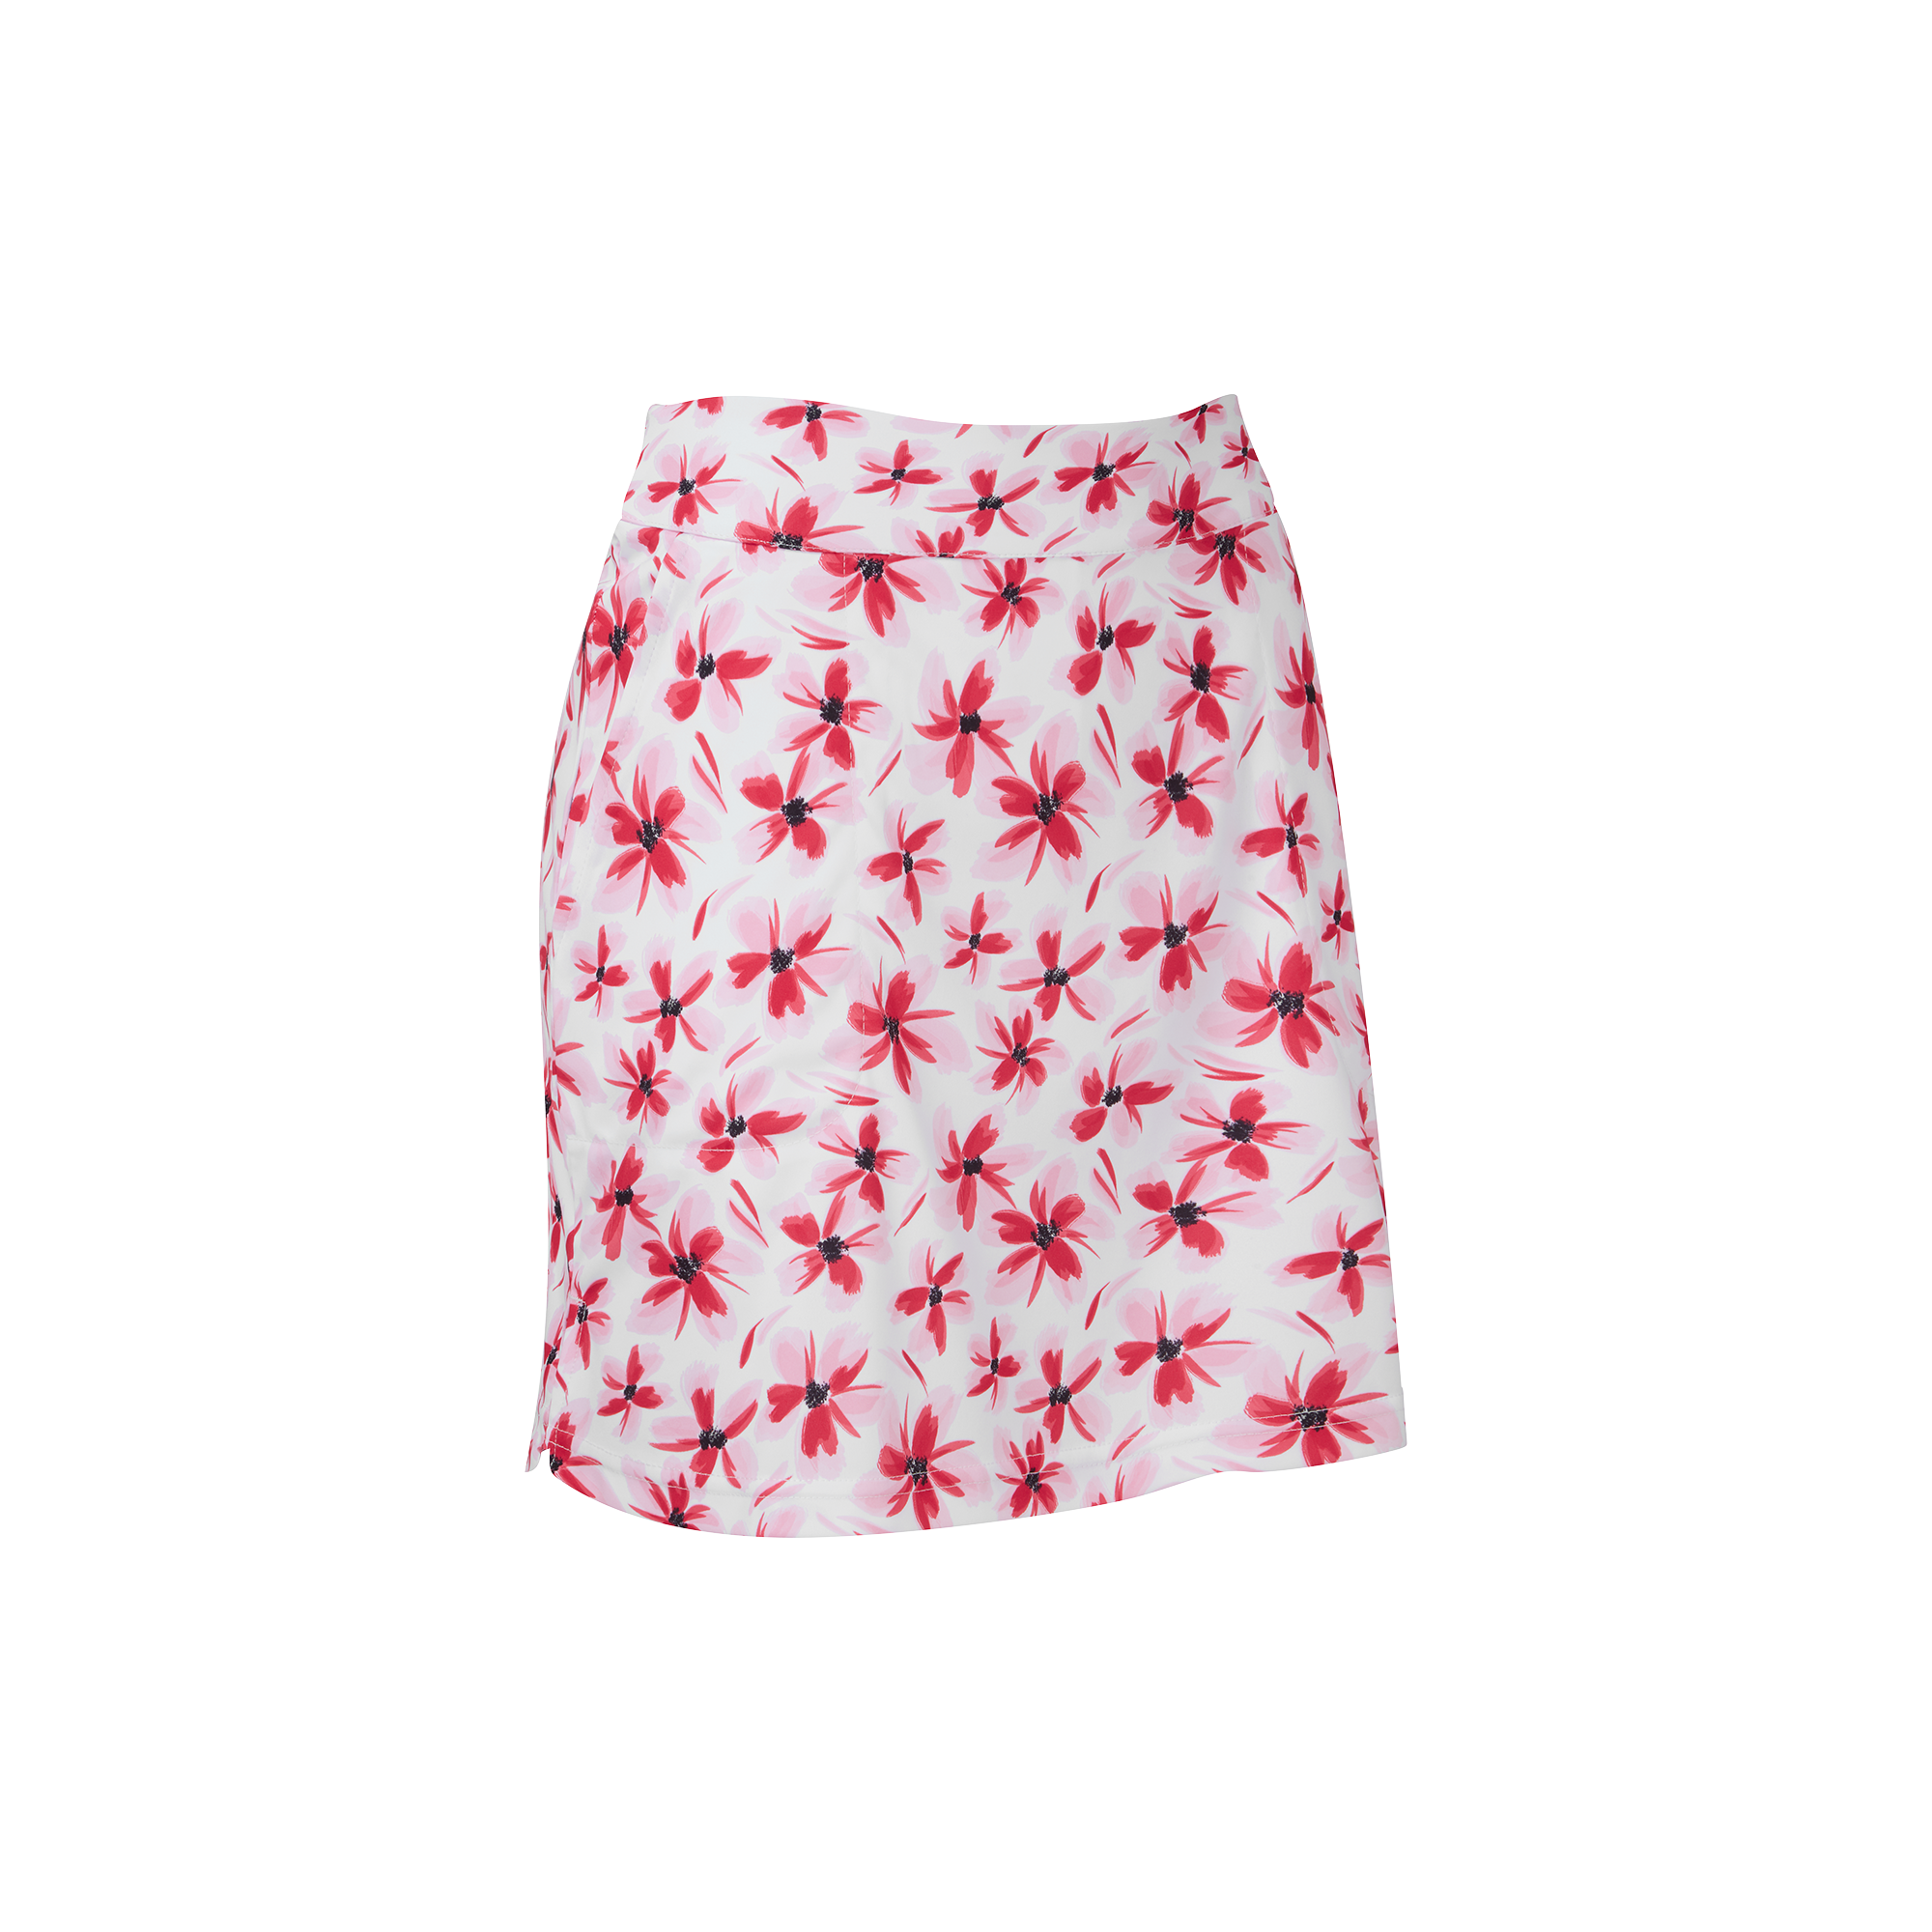 FootJoy Floral Print Knit dámská golfová sukně, bílá/červená, vel. XS